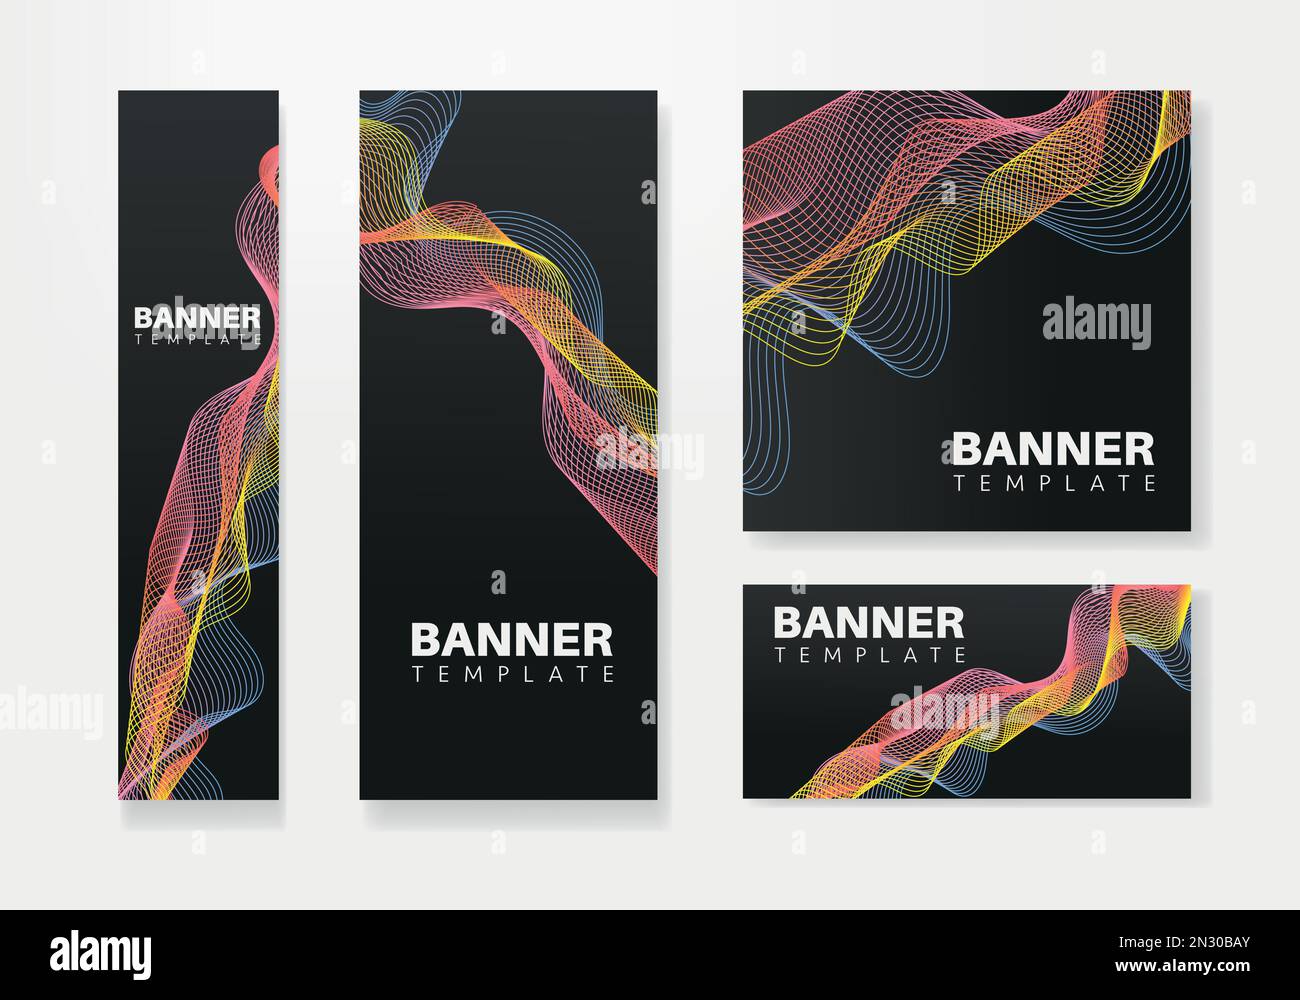 Modernes Bannerdesign Webvorlage Set, Webbanner. Hintergrund für Website-Design, Social-Media-Cover-Werbebanner, Flyer, Einladungskarte Stock Vektor